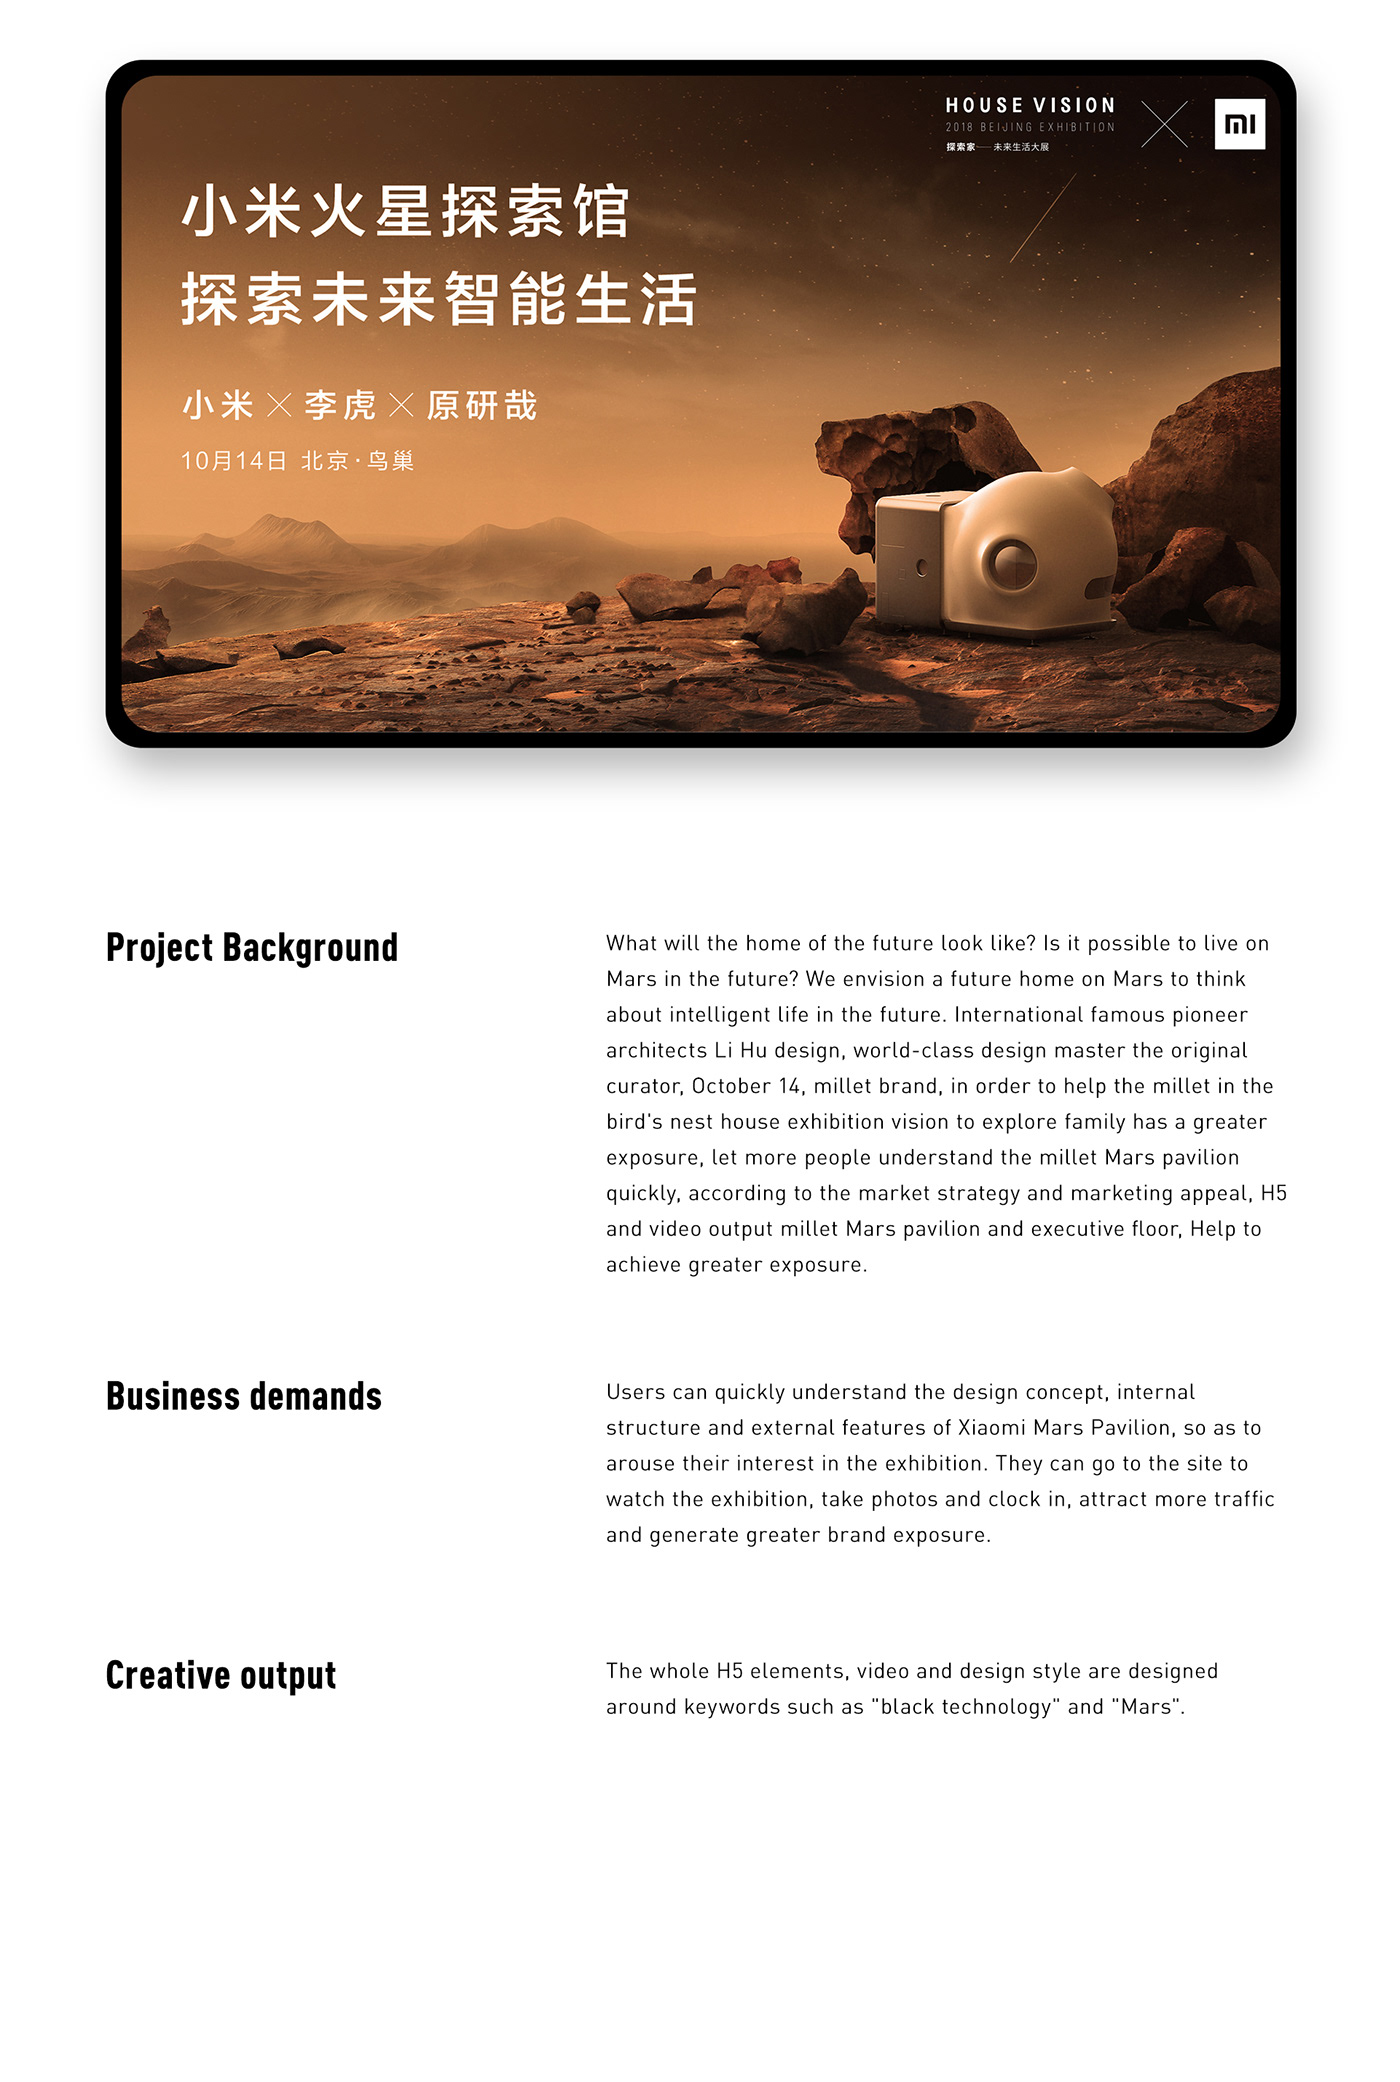 H5 ui design Web 创意 品牌 平面 广告 海报 营销 设计